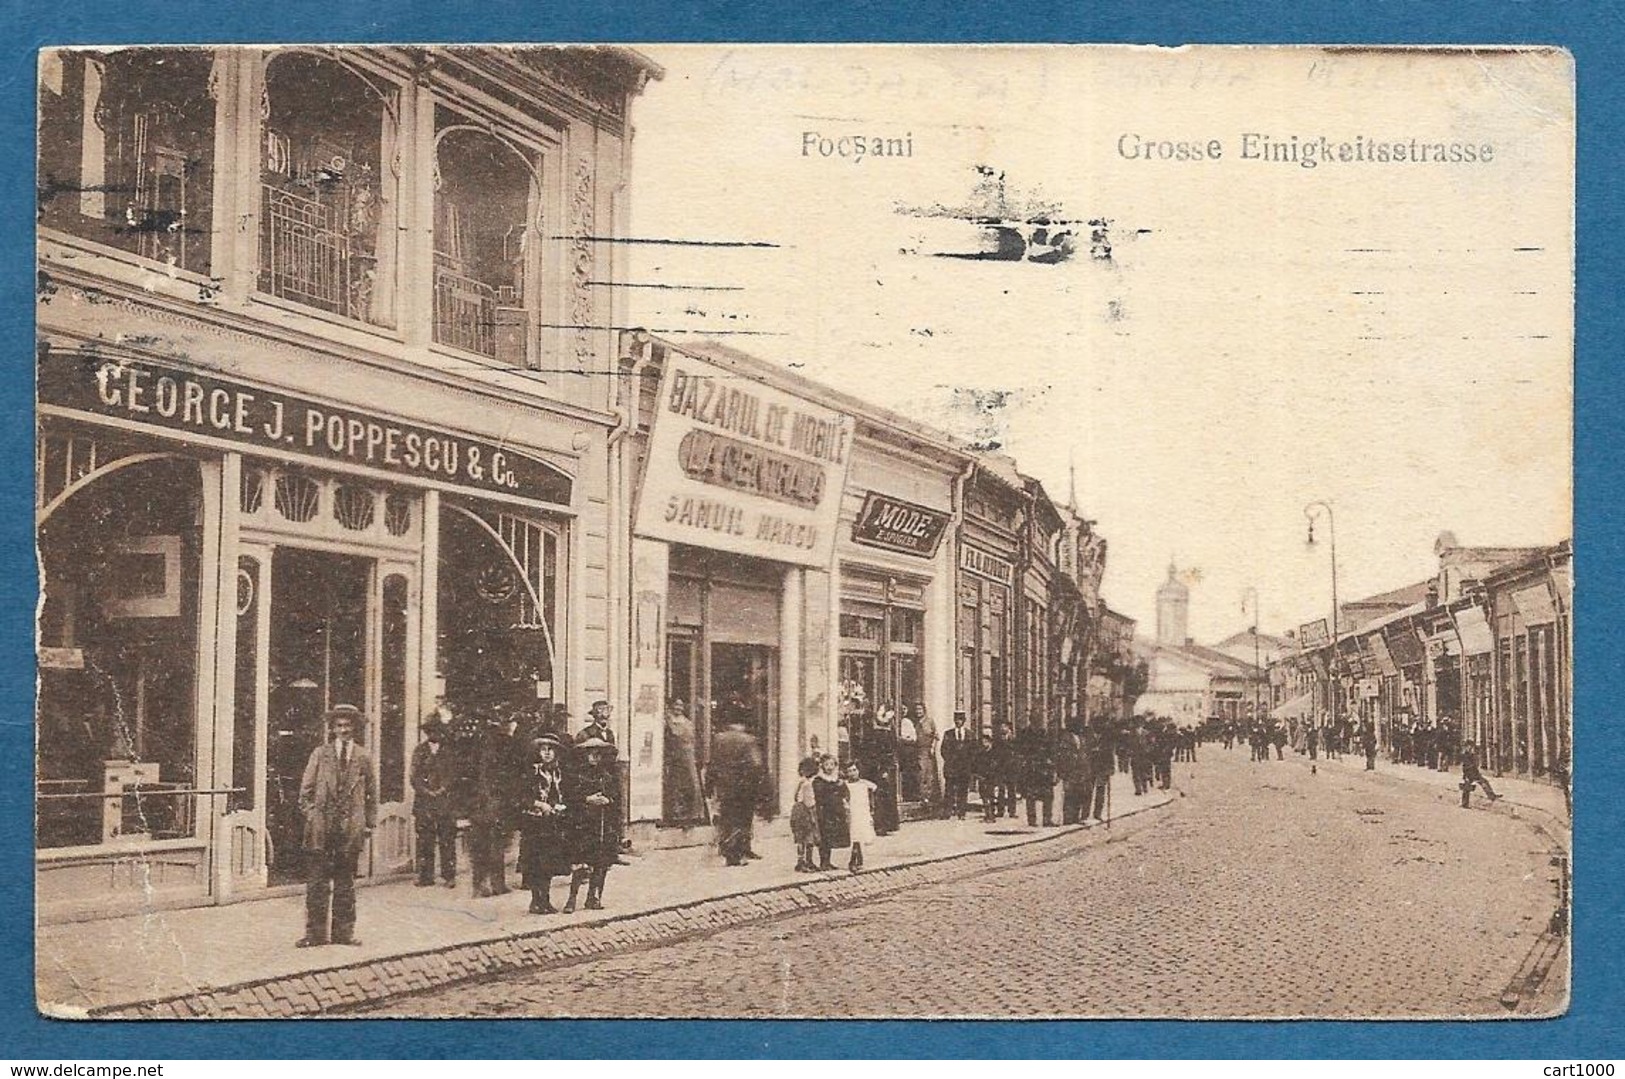 FOCSANI GROSSE EINIGKEITSTRASSE 1920 - Romania